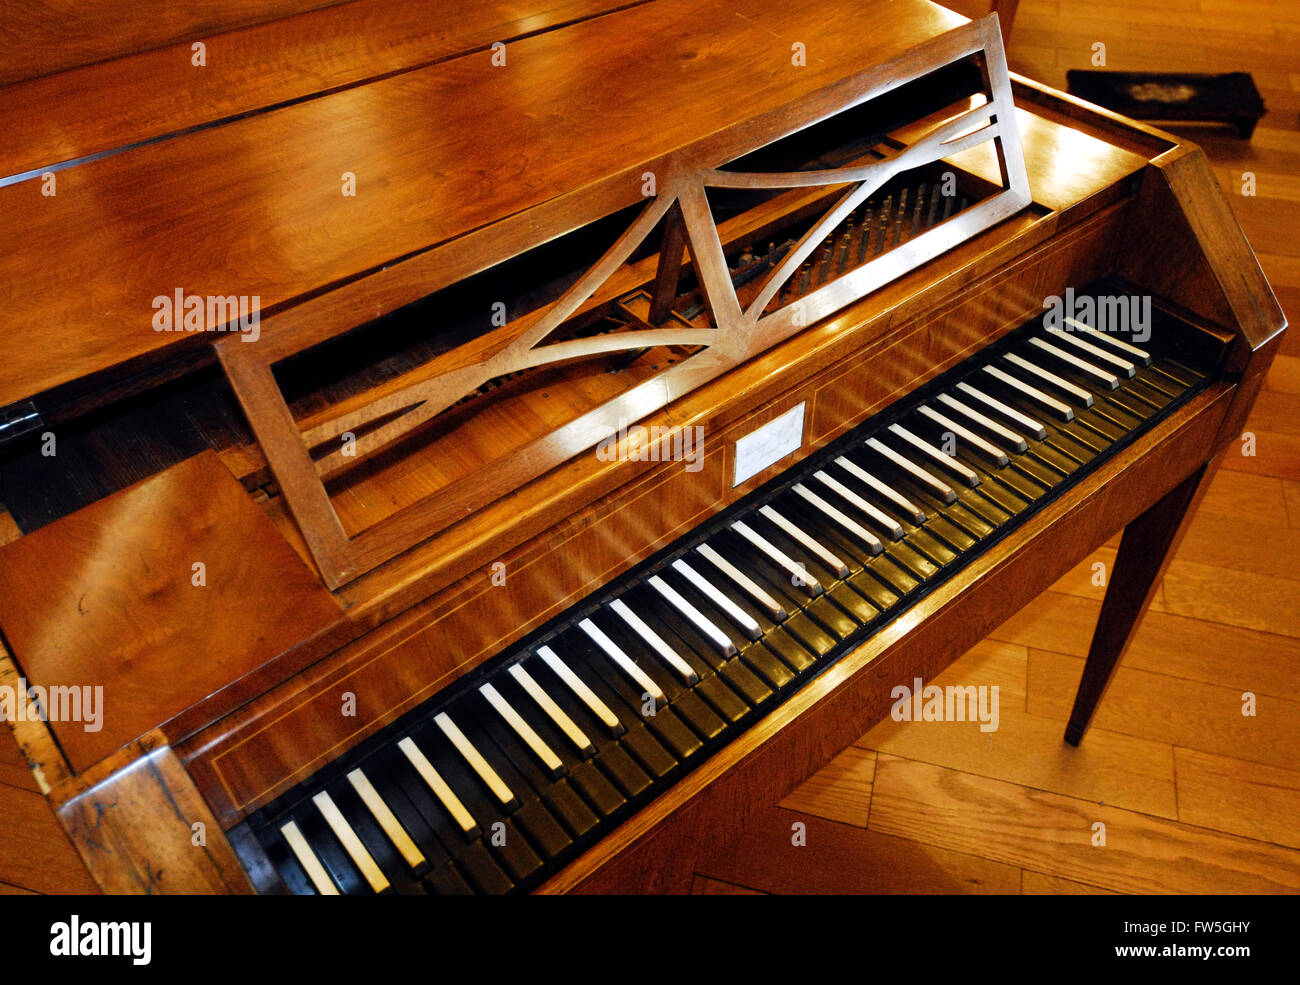 Pianoforte by Michael Weiss - Strasbourg 1800-1805 Stock Photo - Alamy